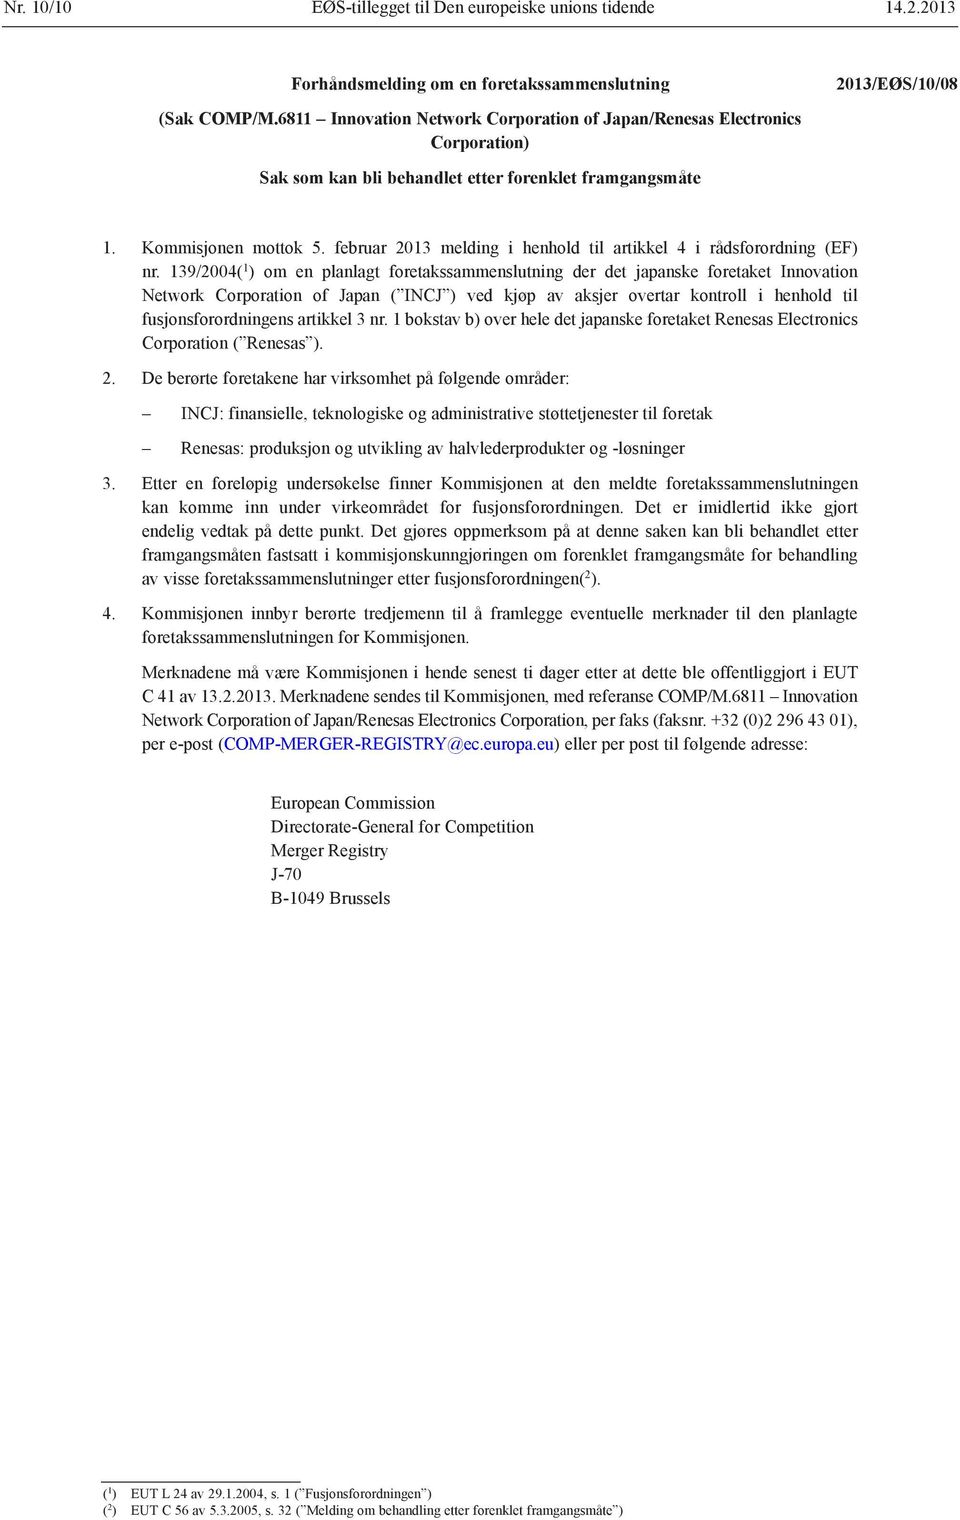 februar 2013 melding i henhold til artikkel 4 i rådsforordning (EF) nr.